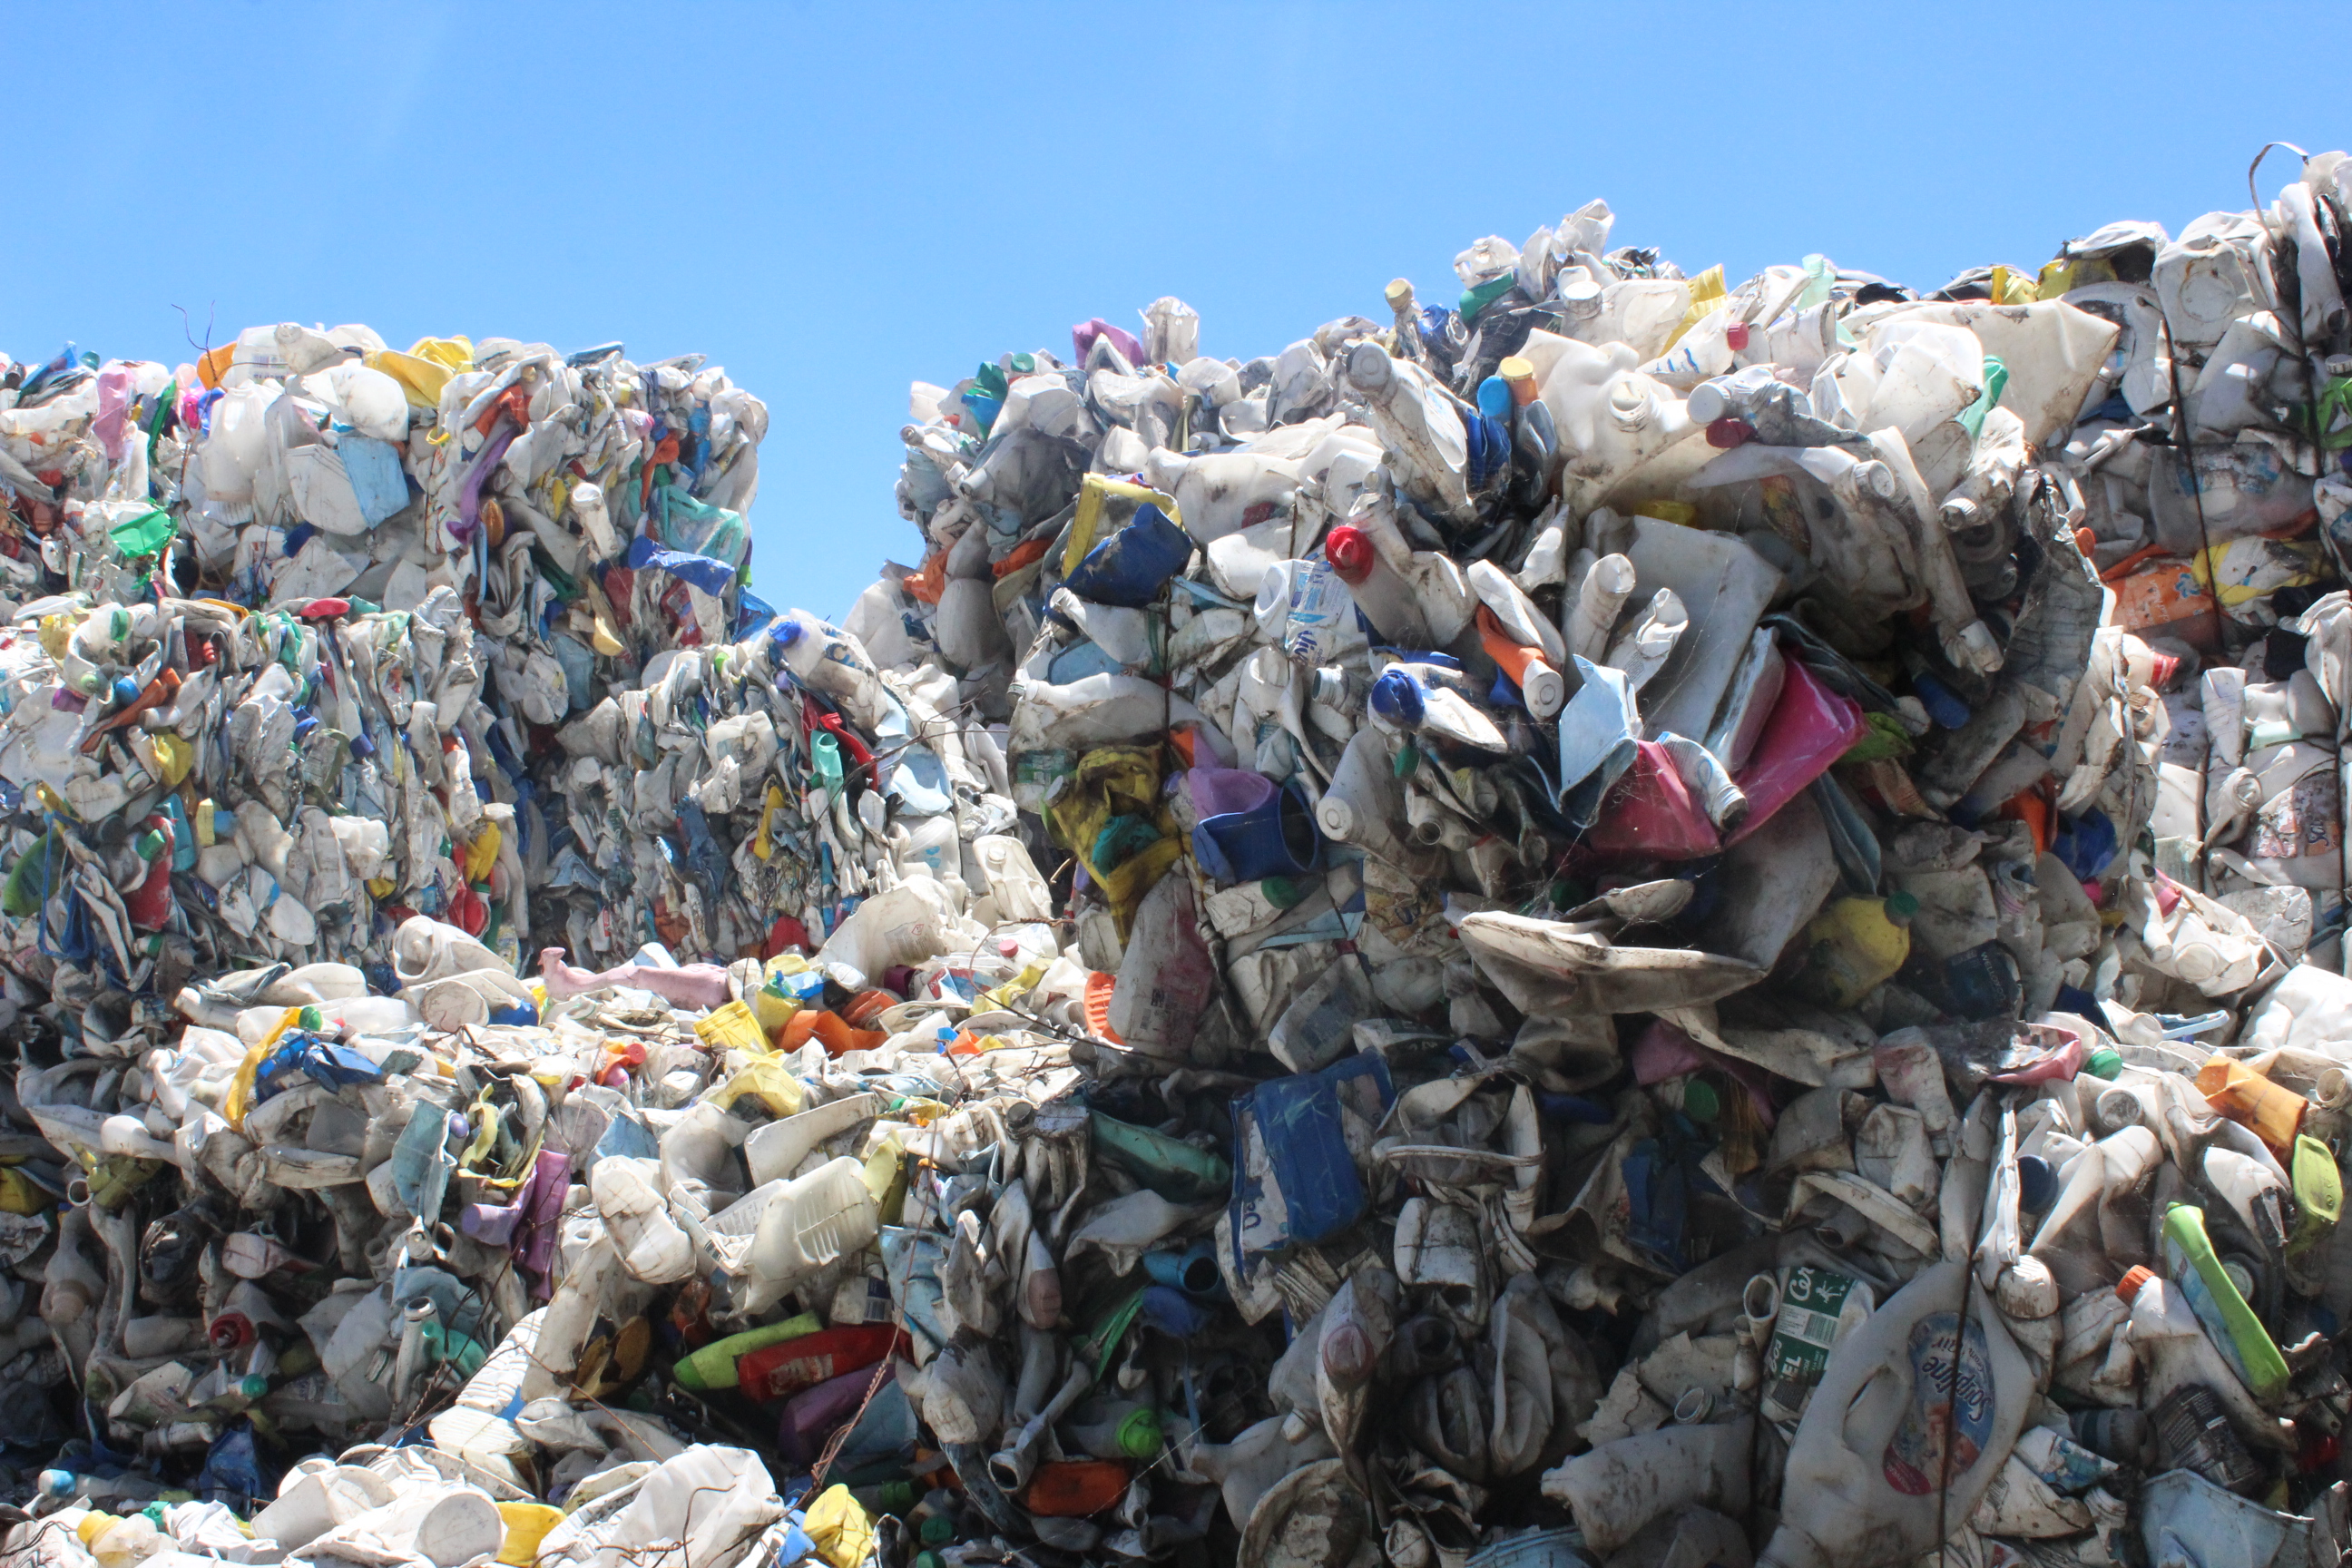 La déchetterie devrait être installée dans la zone industrielle de la Punaruu, et devrait notamment accueillir les déchets encombrants (ferraille, plastique, polystyrène et pneu) des habitants de la commune de Punaauia.